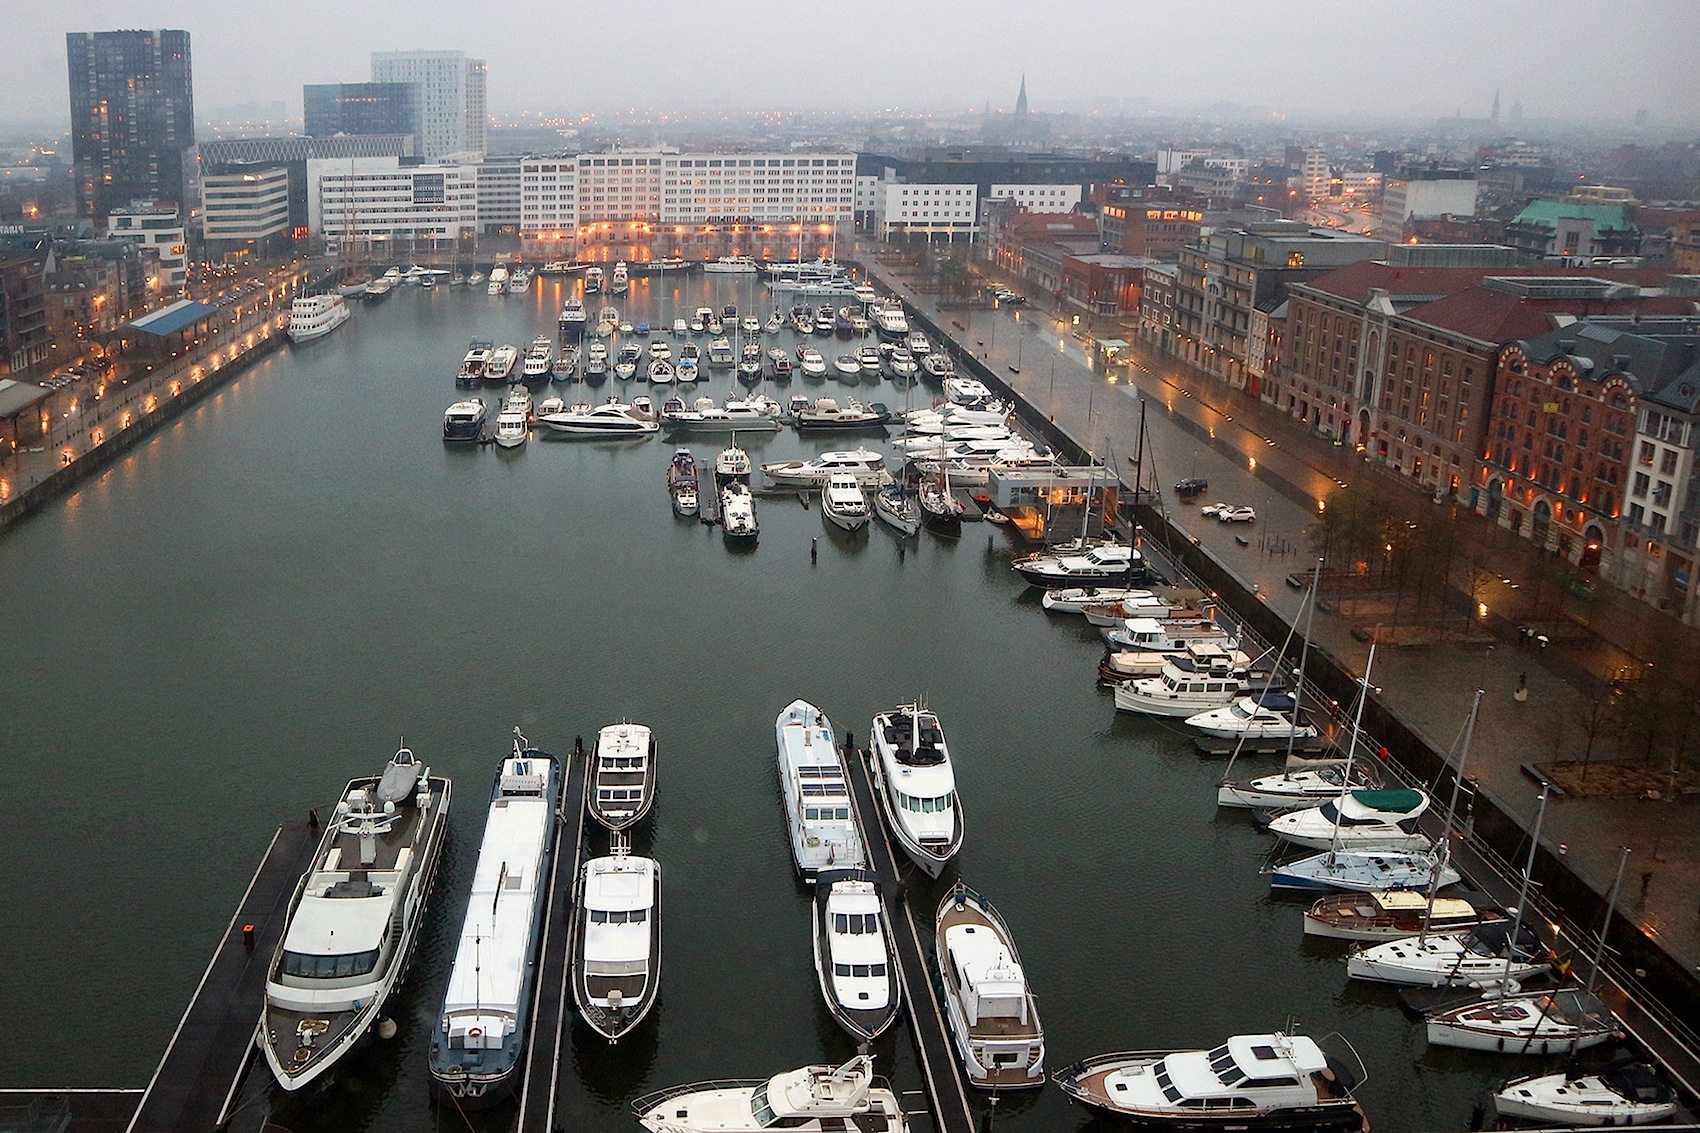 Historisch. Durch die gewellten Glasscheiben fällt der Blick hinunter auf die ältesten Docks der Stadt, den Willemdok und den Bonapartedok.